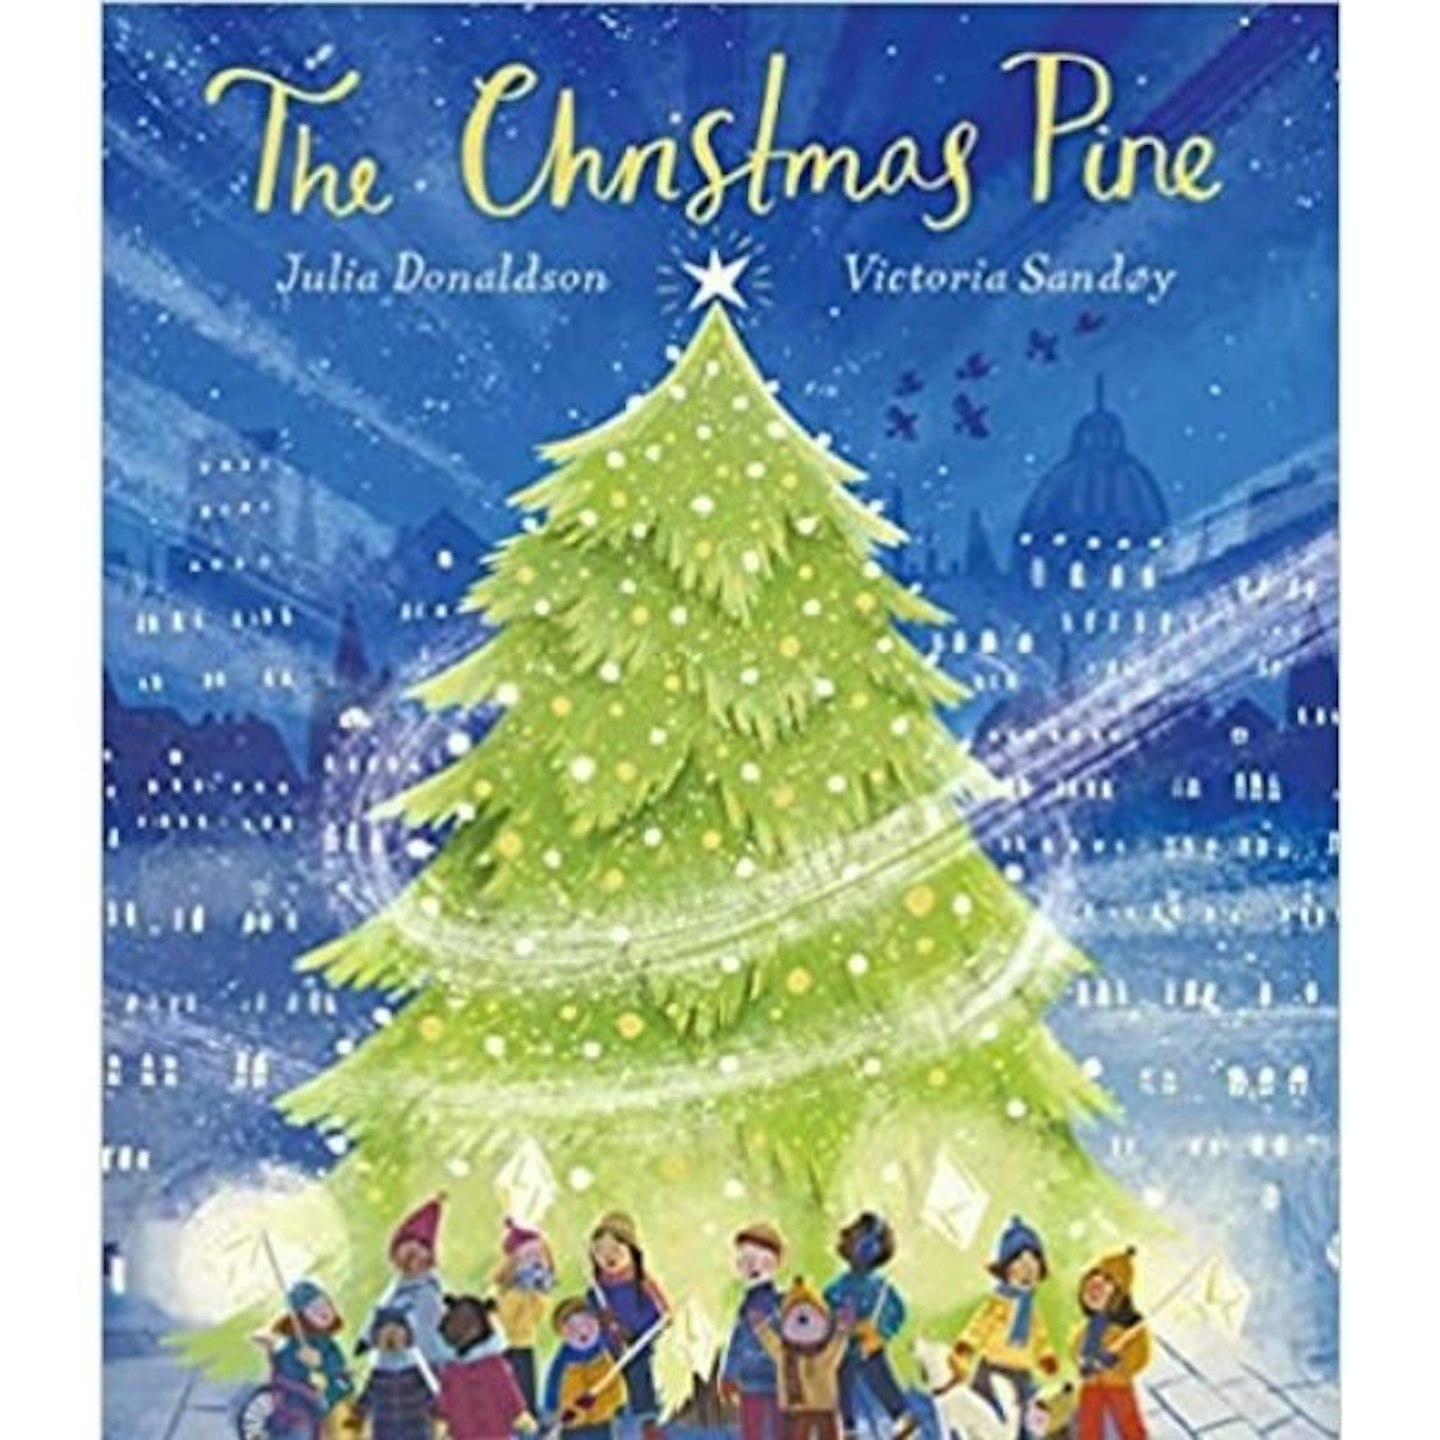 The Christmas Pine: a magical story for Christmas